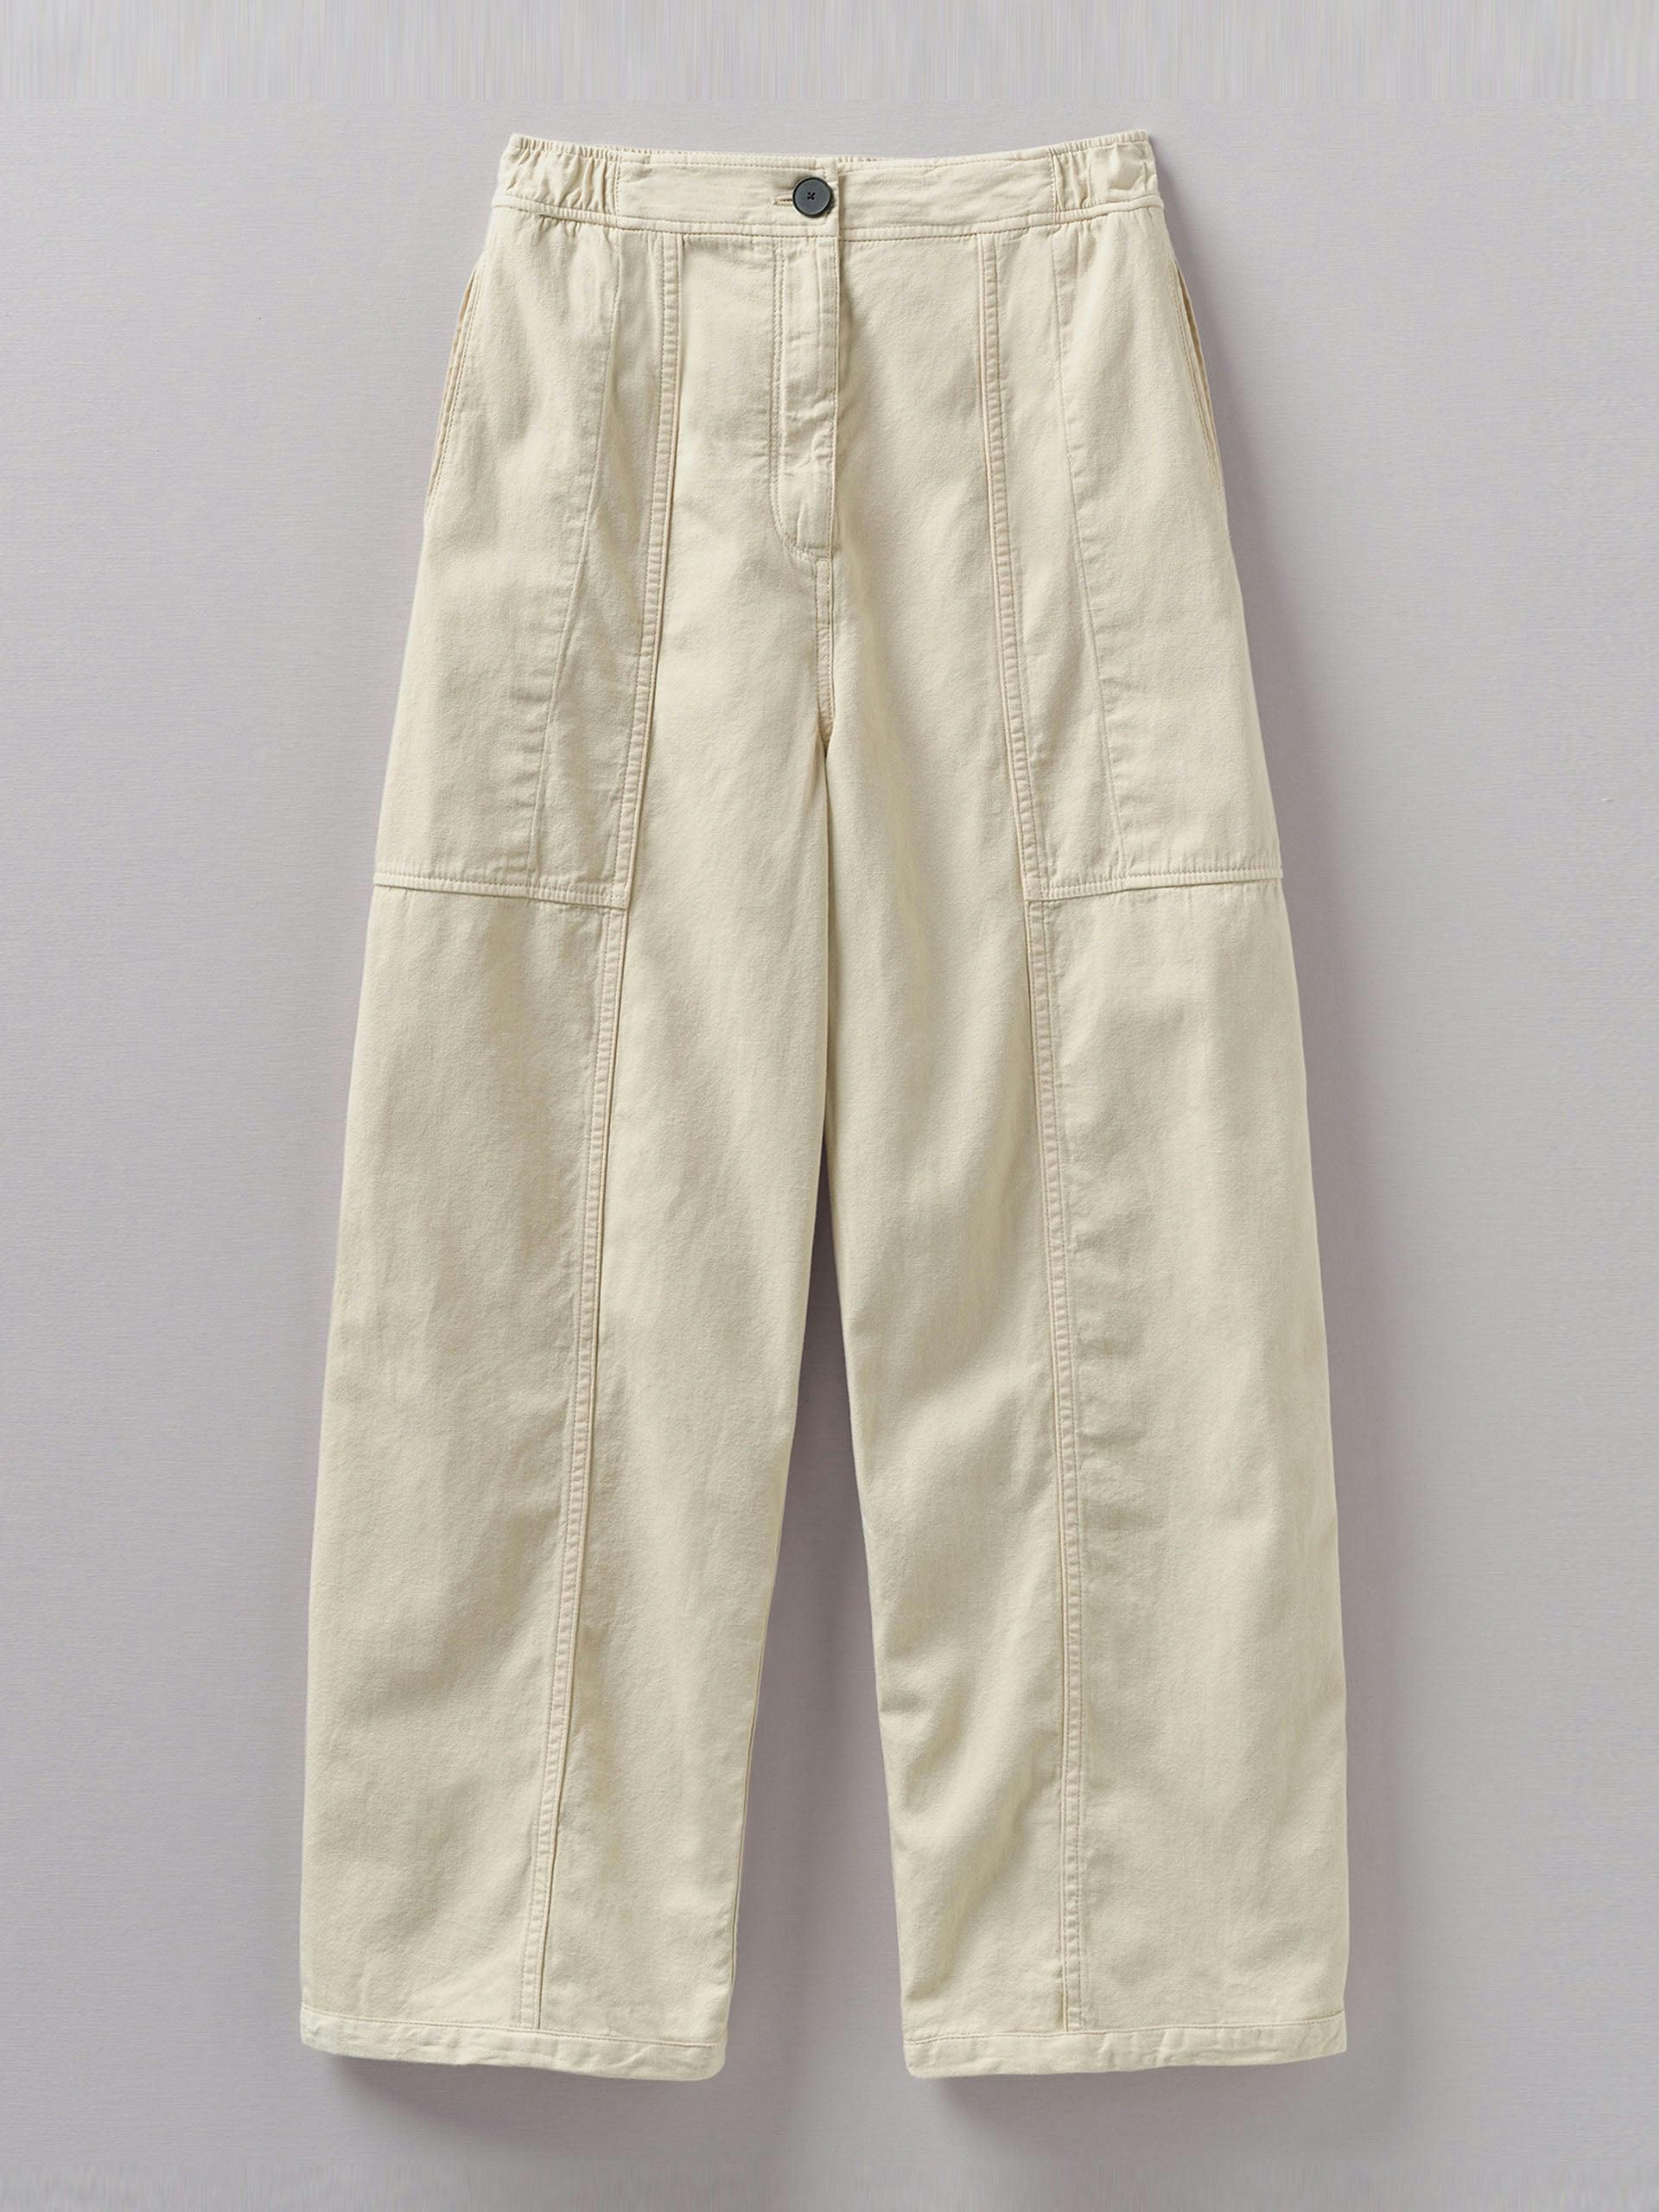 Panelled cotton linen canvas trousers